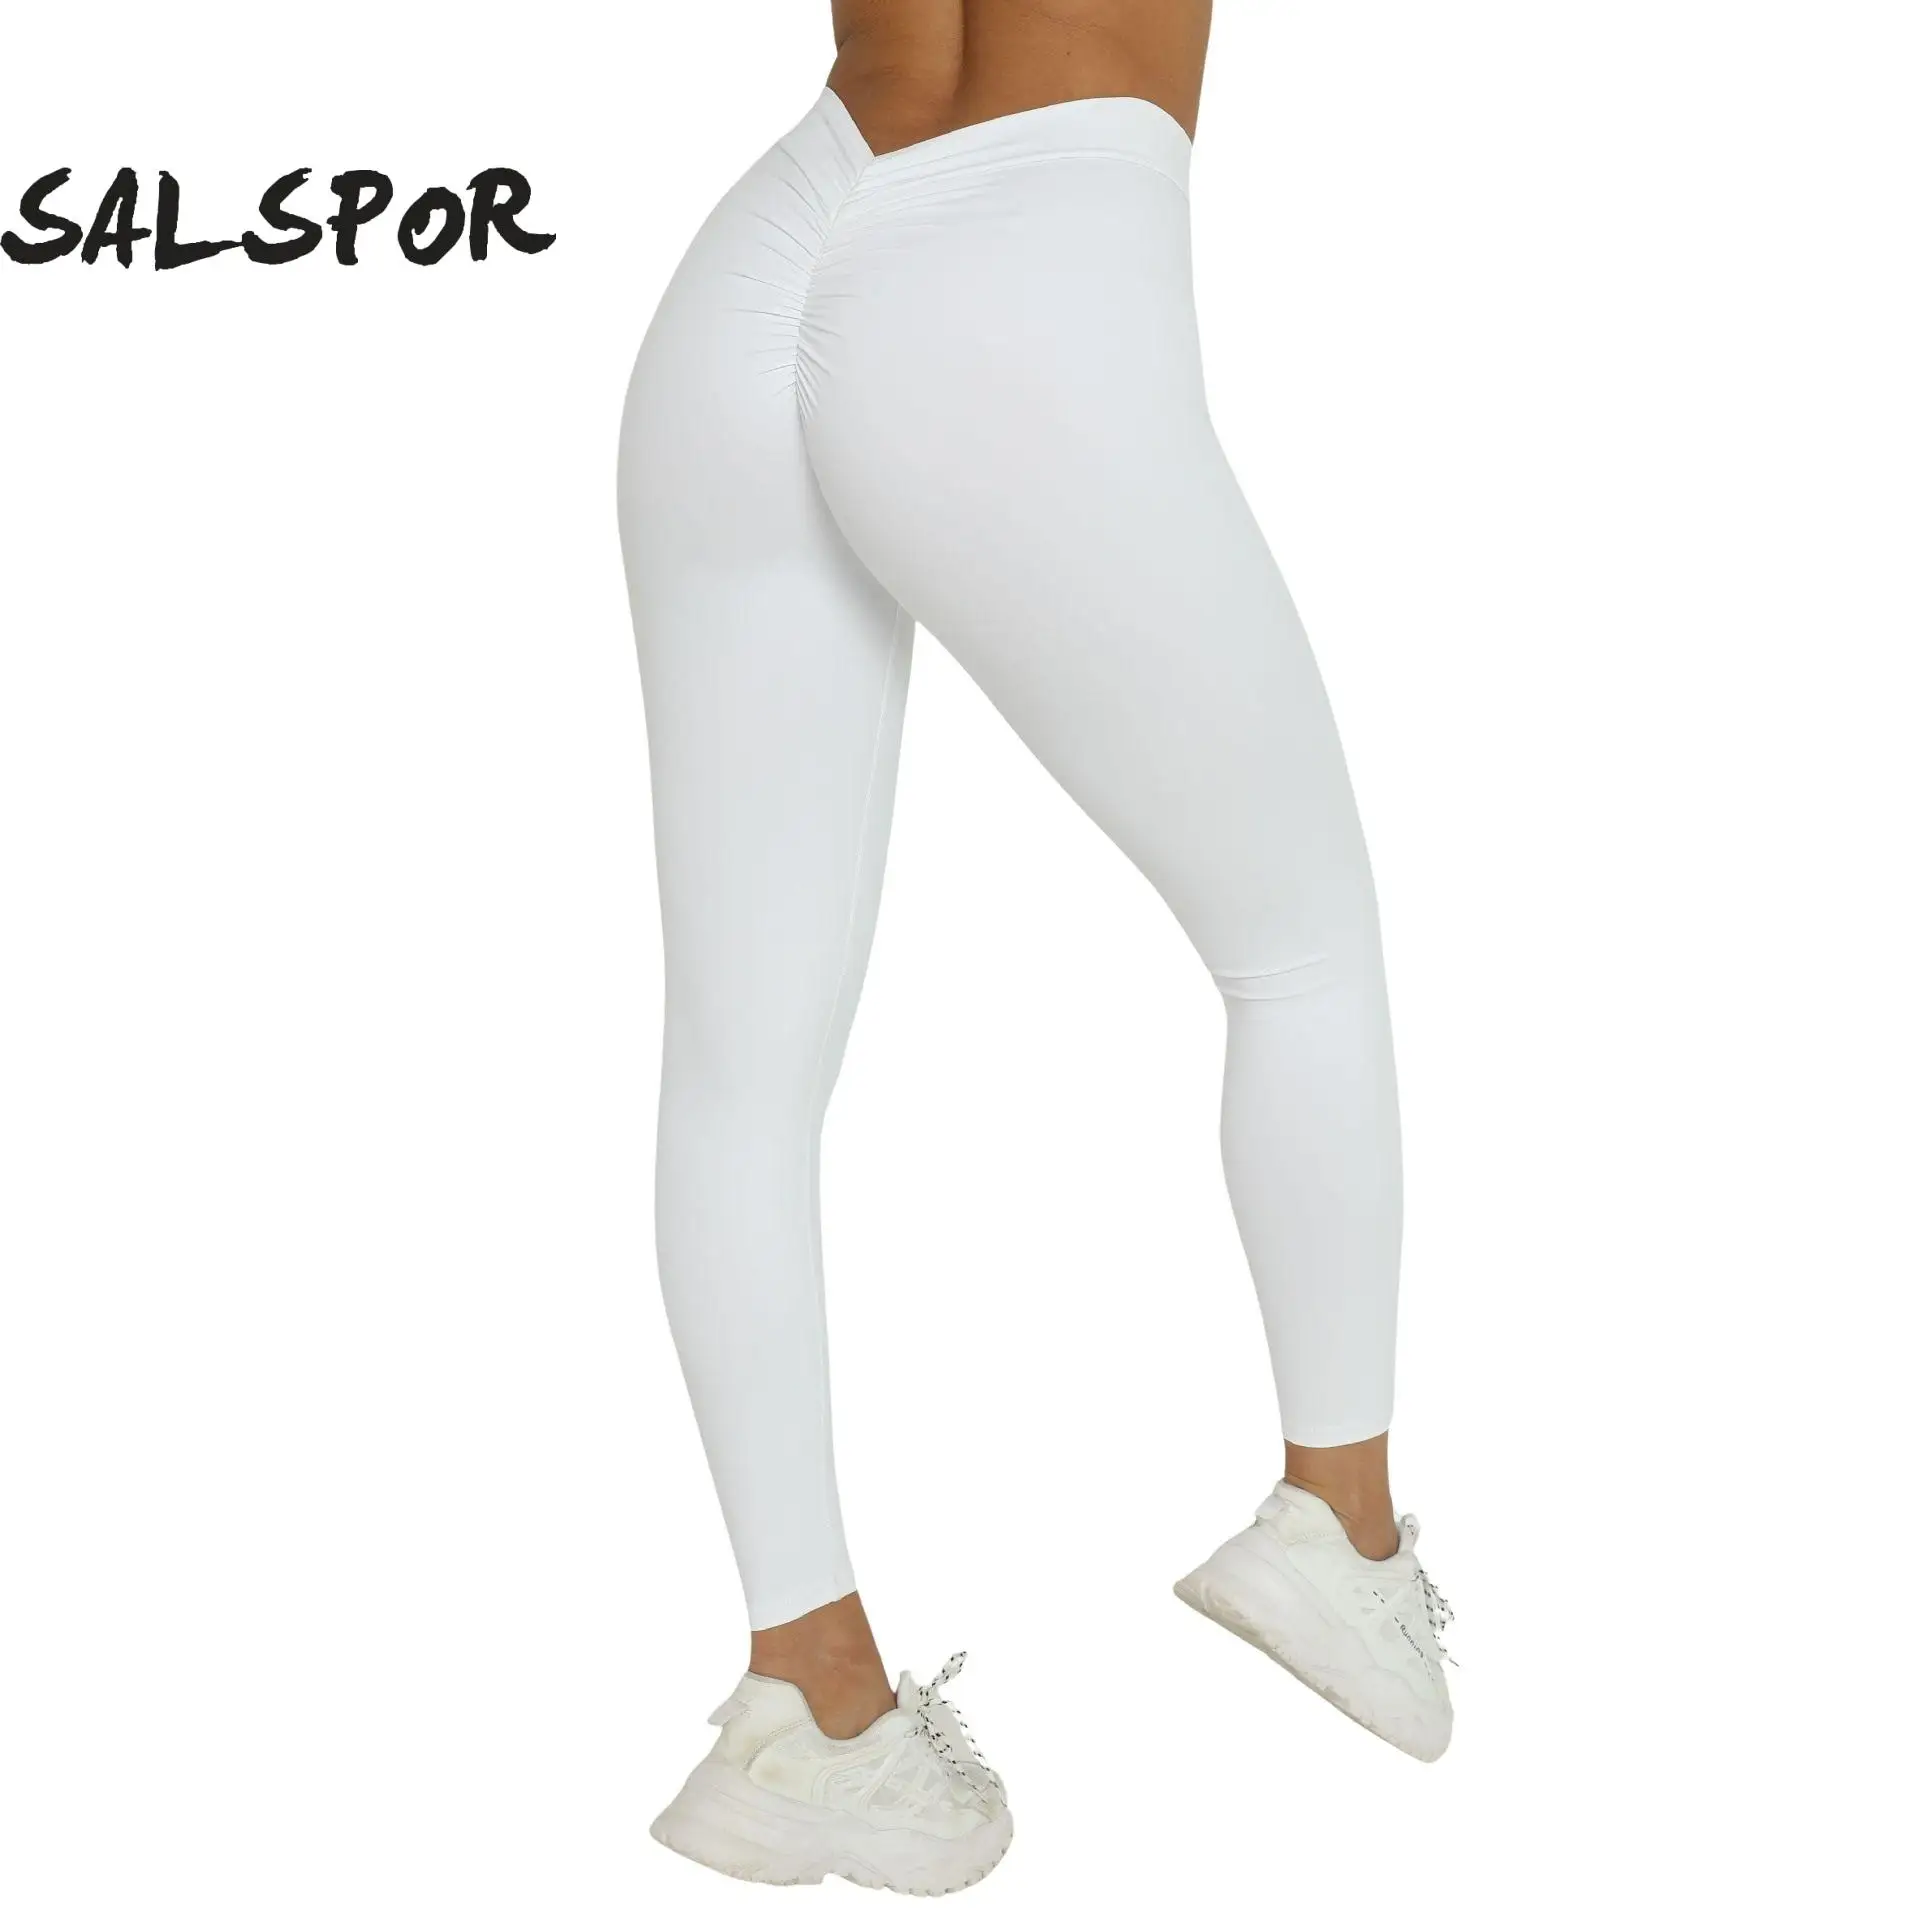 

SALSPOR Back V Butt Yoga Pants Butt Lift Scrunch Workout Leggings Running Ruched Tights Women High Waist Fitness Pant Activewear